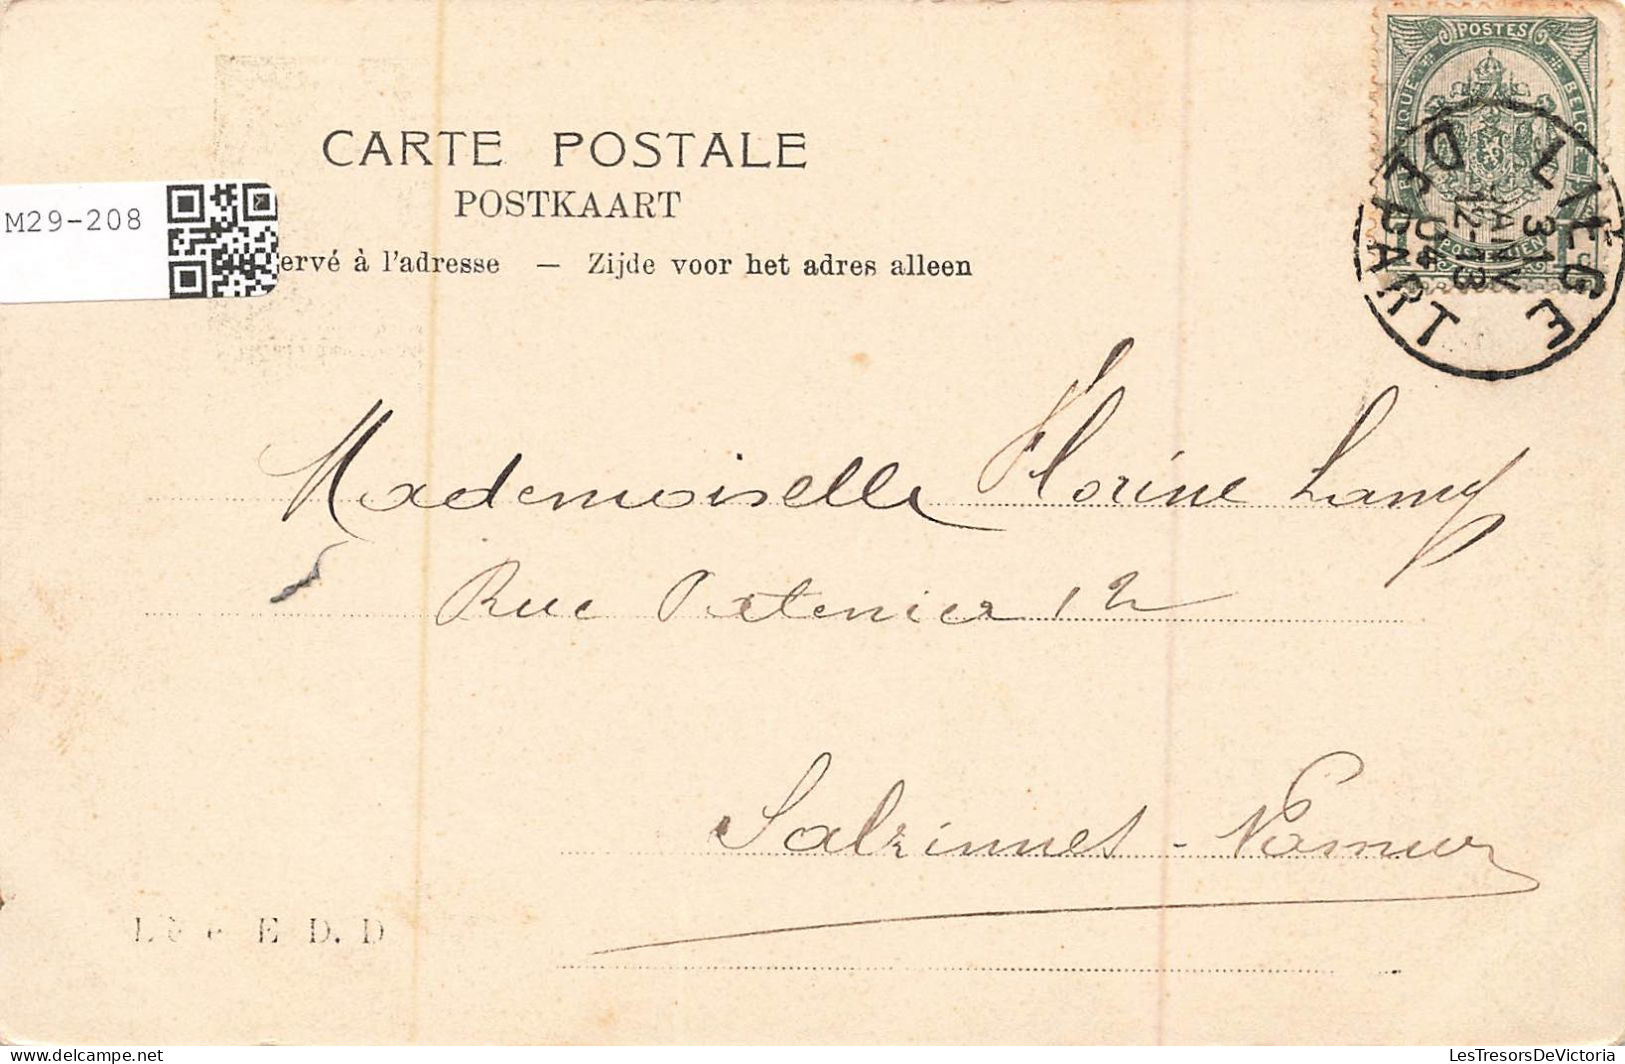 BELGIQUE - Liège - La Meuse, La Passerelle Et La Poste Centrale - Animé - Carte Postale Ancienne - Liege